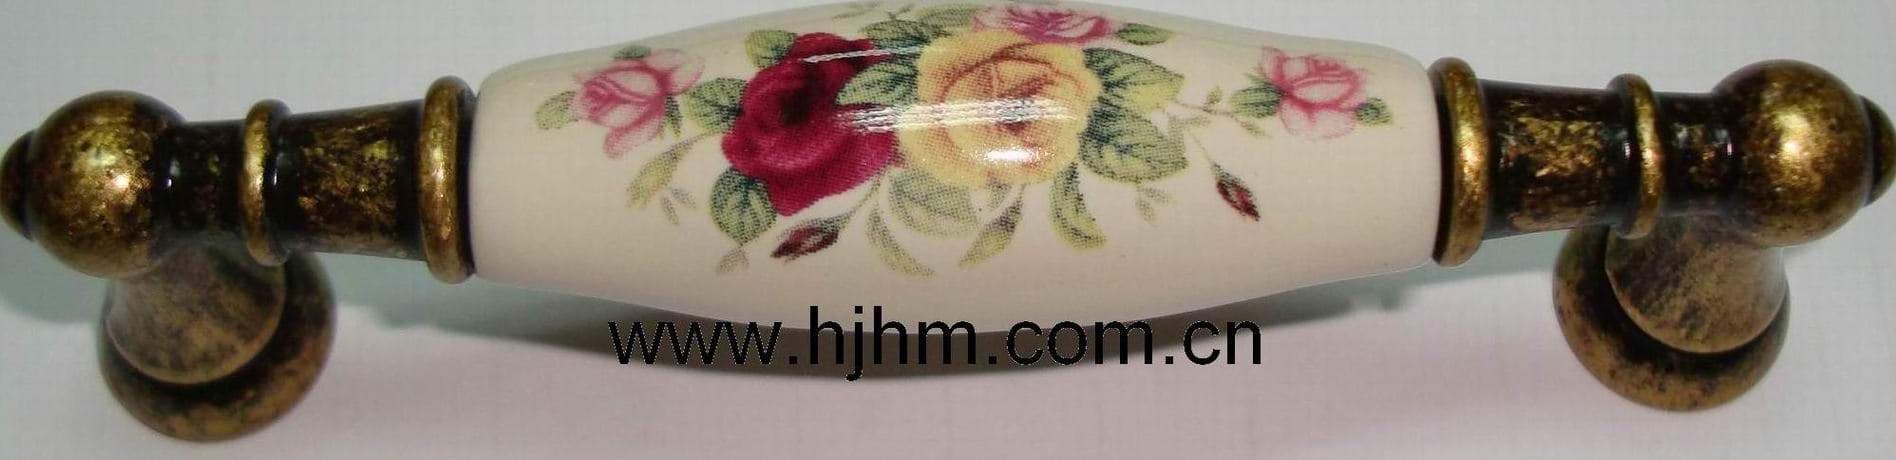 flower ceramic handle